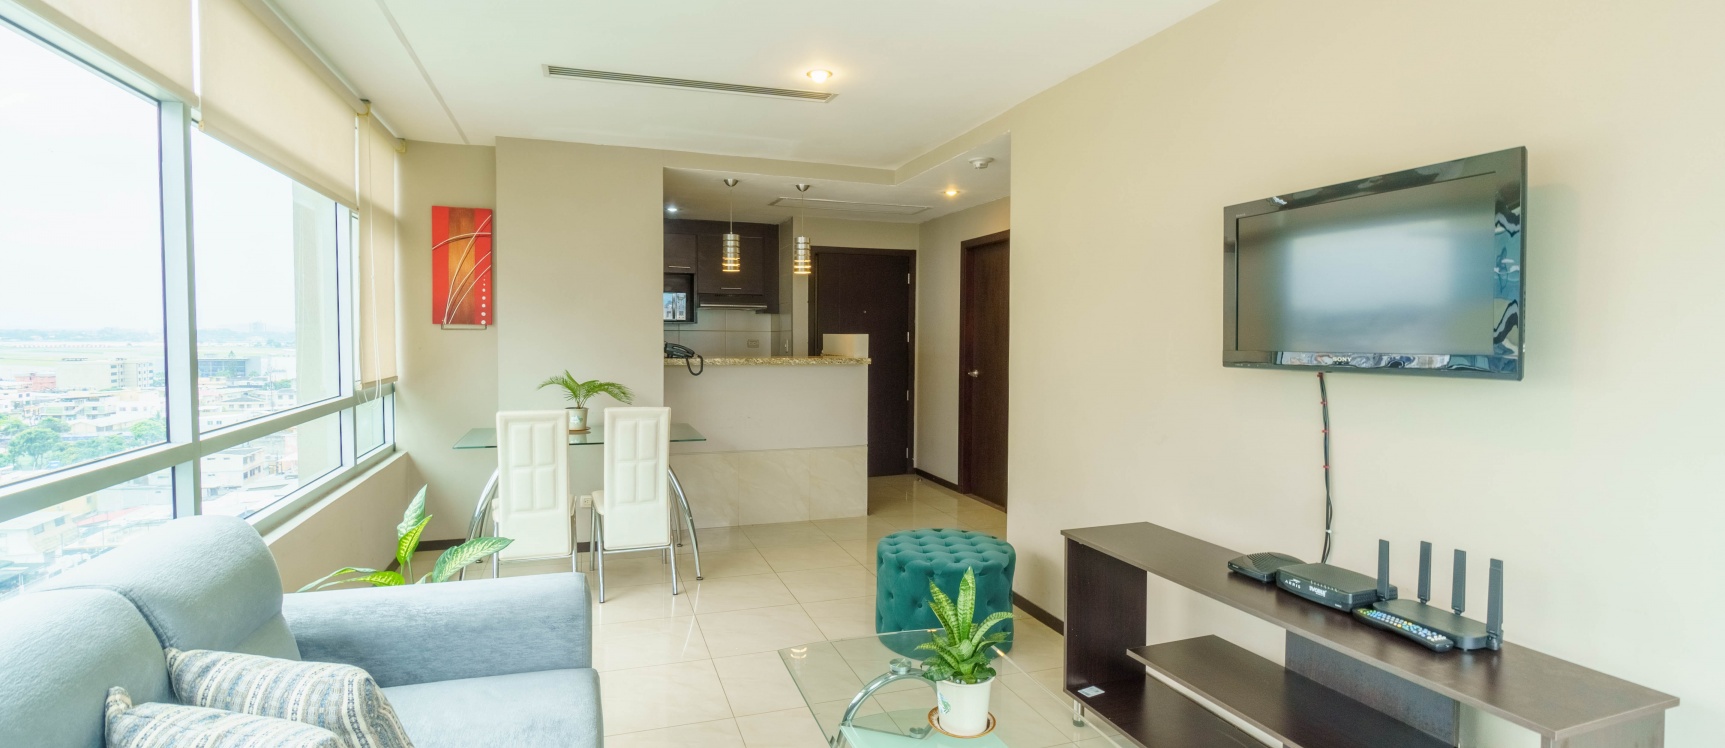 GeoBienes - Suite en alquiler ubicado Elite Building, Norte de Guayaquil - Plusvalia Guayaquil Casas de venta y alquiler Inmobiliaria Ecuador